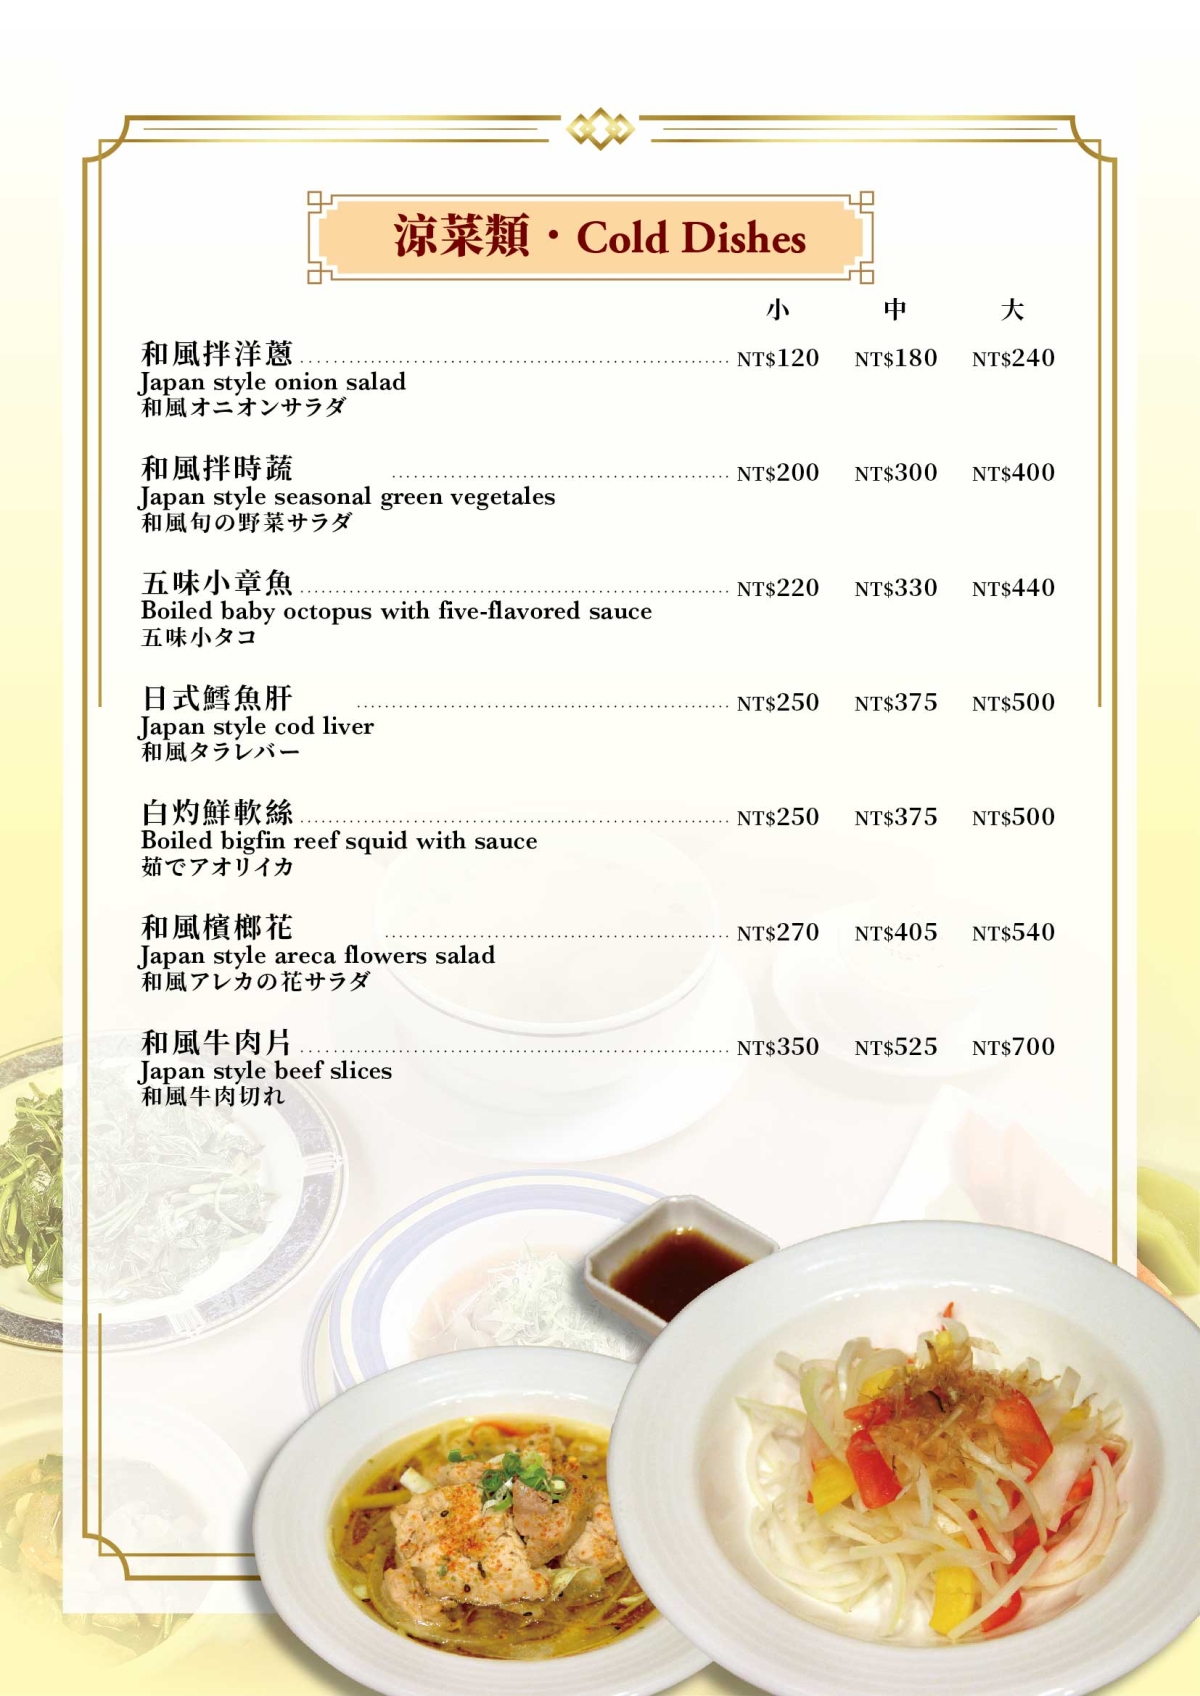 中式菜單11_涼菜類